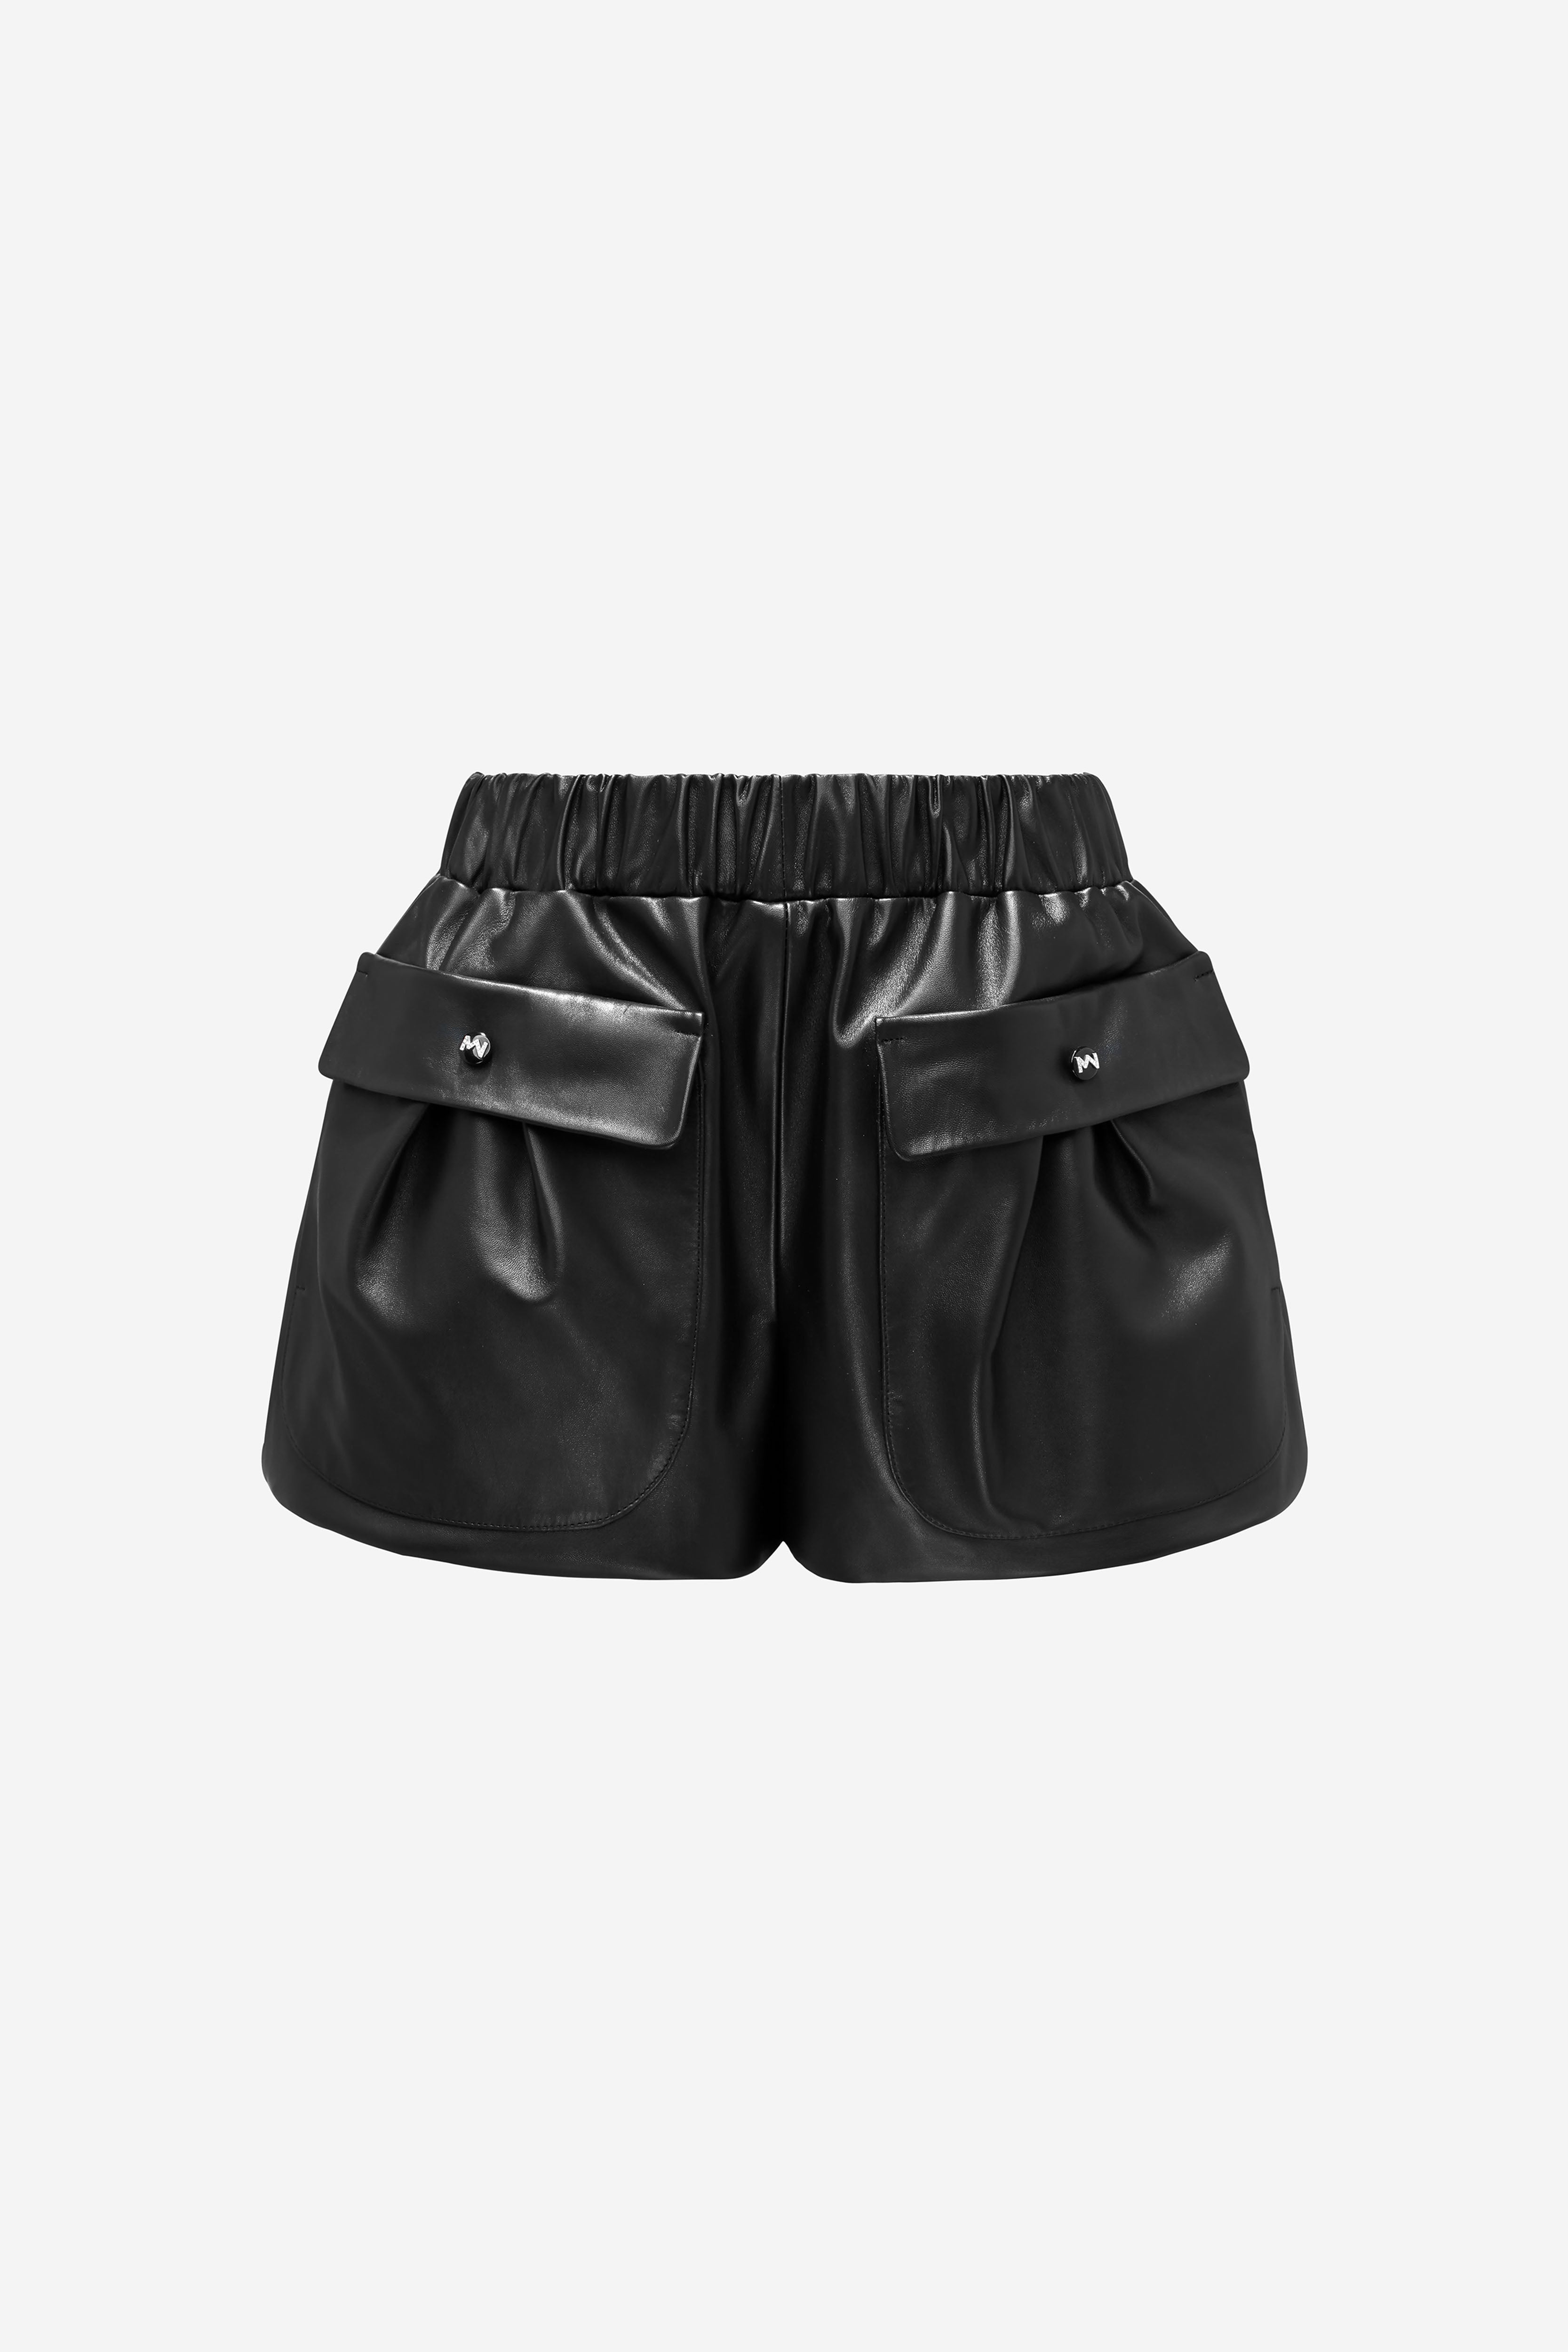 Kazbek Leather Shorts